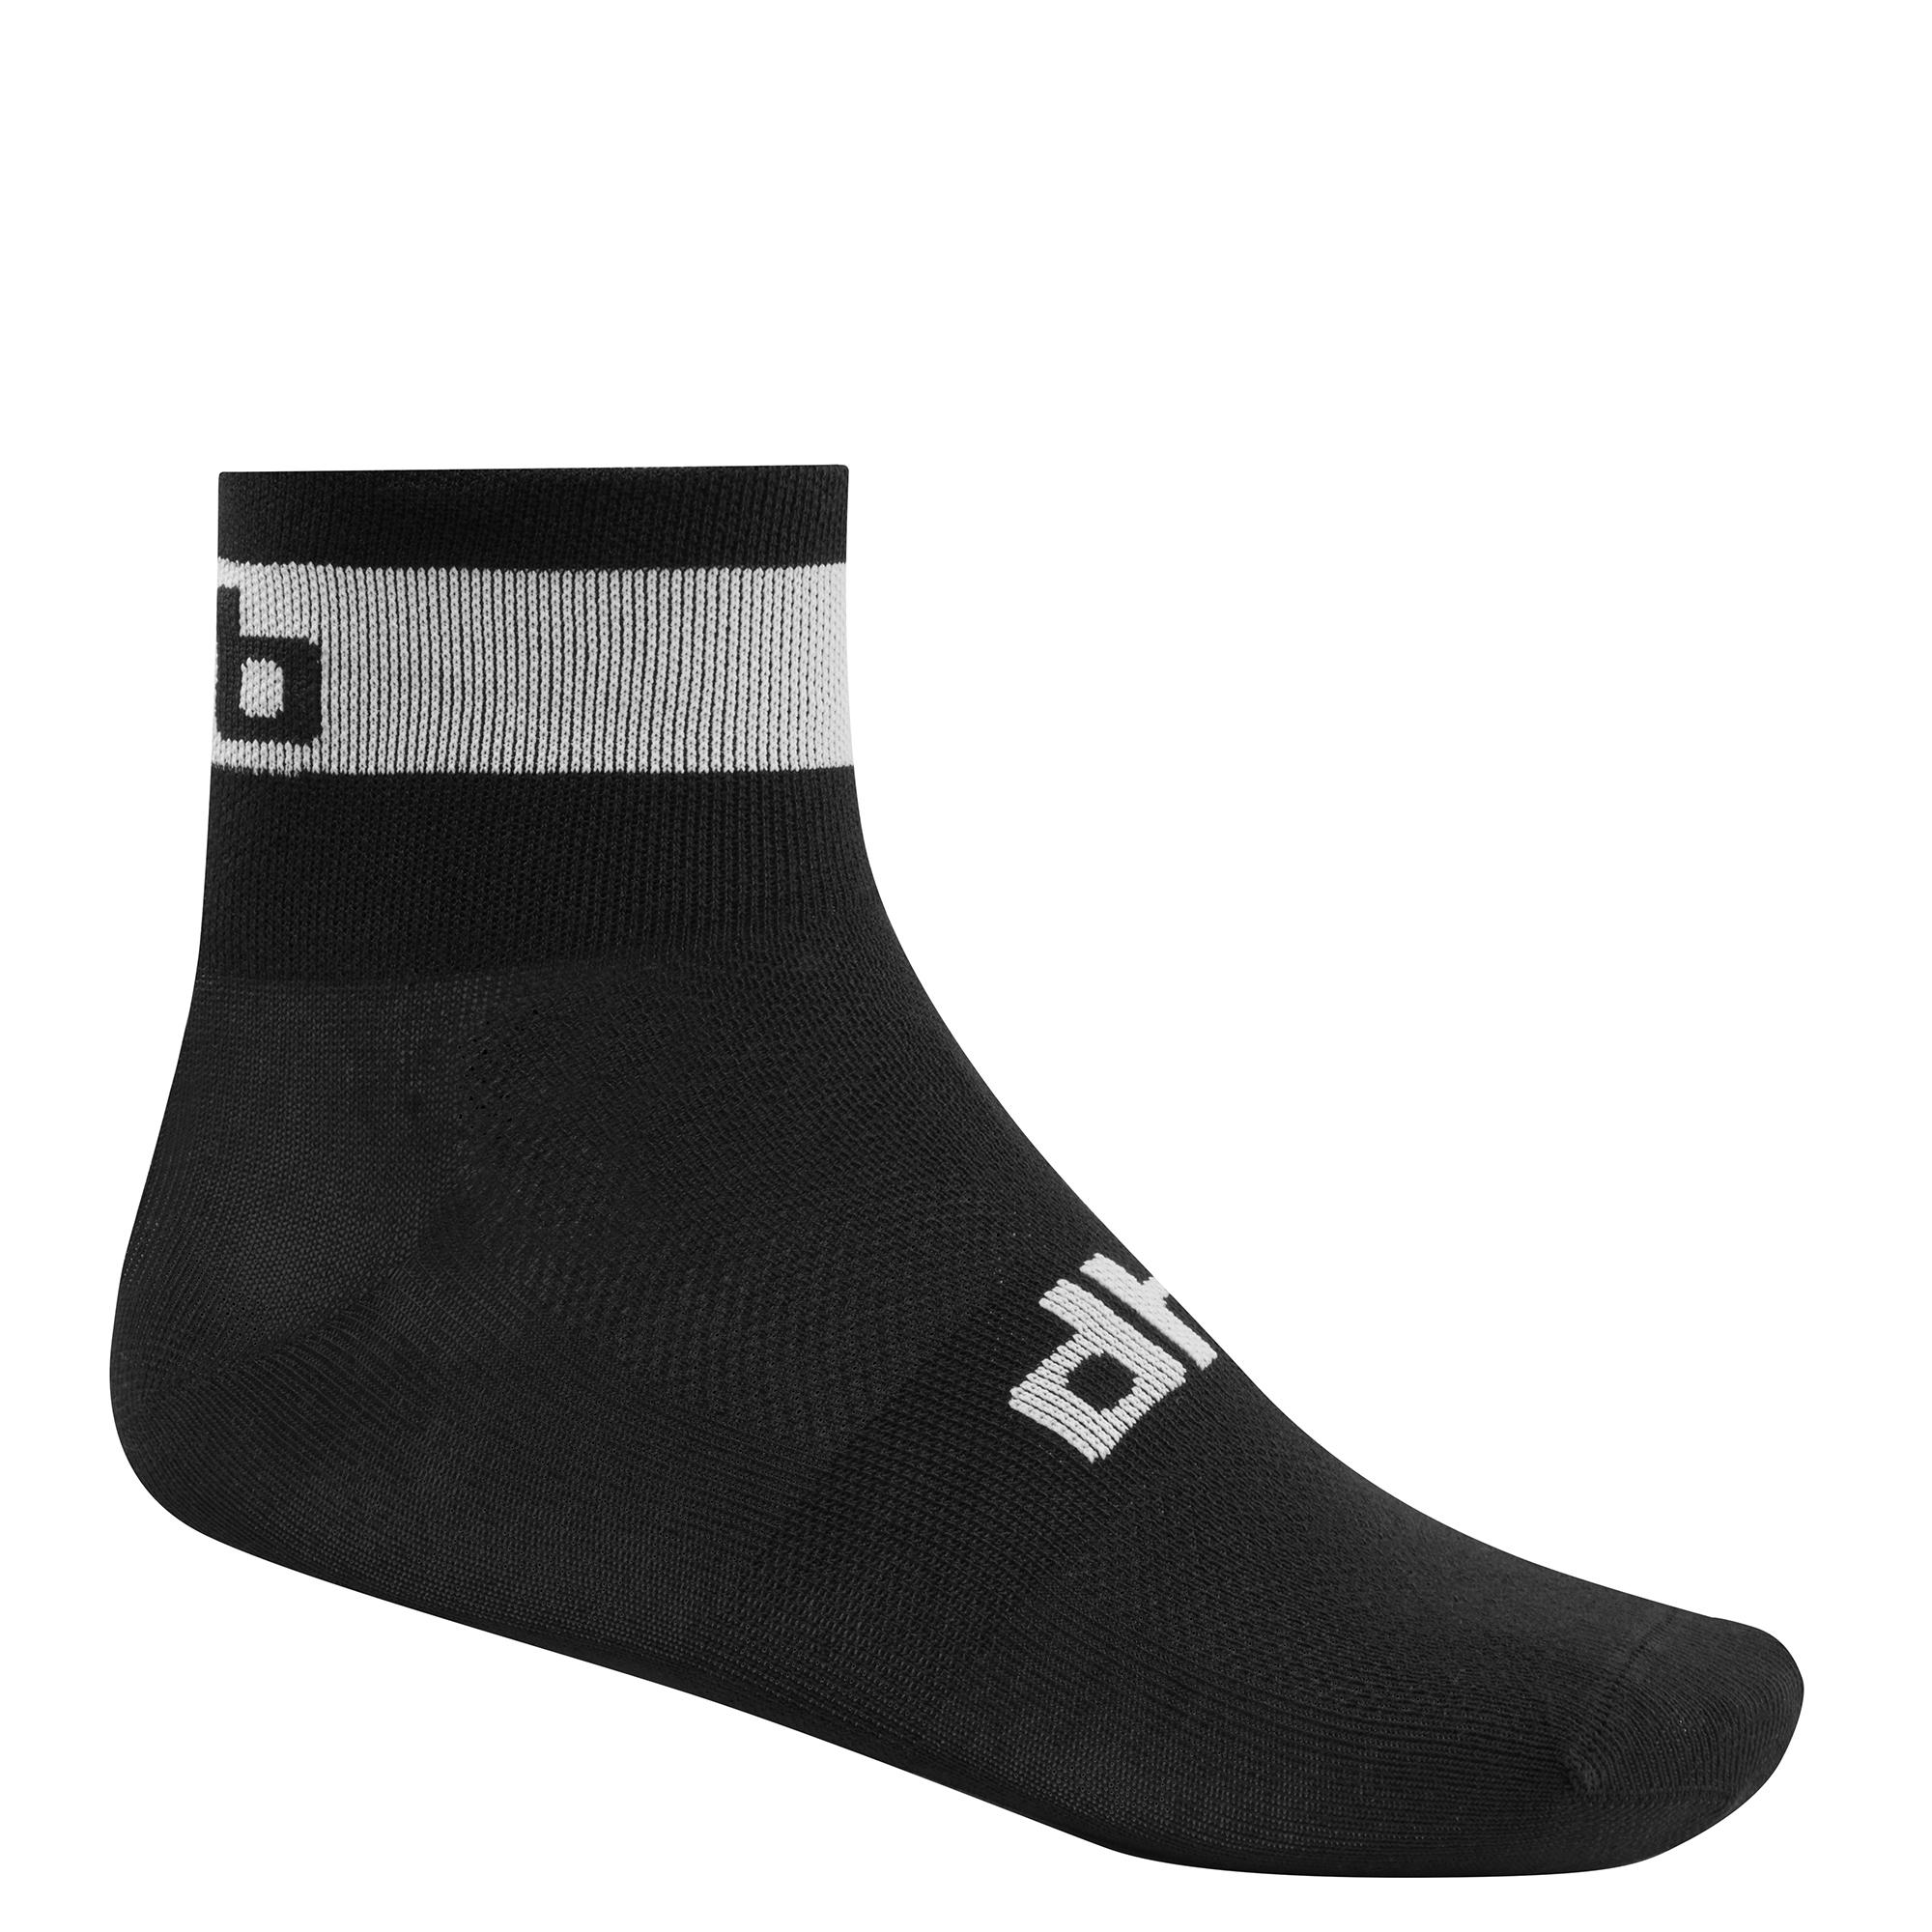 Dhb Sock  Black/white